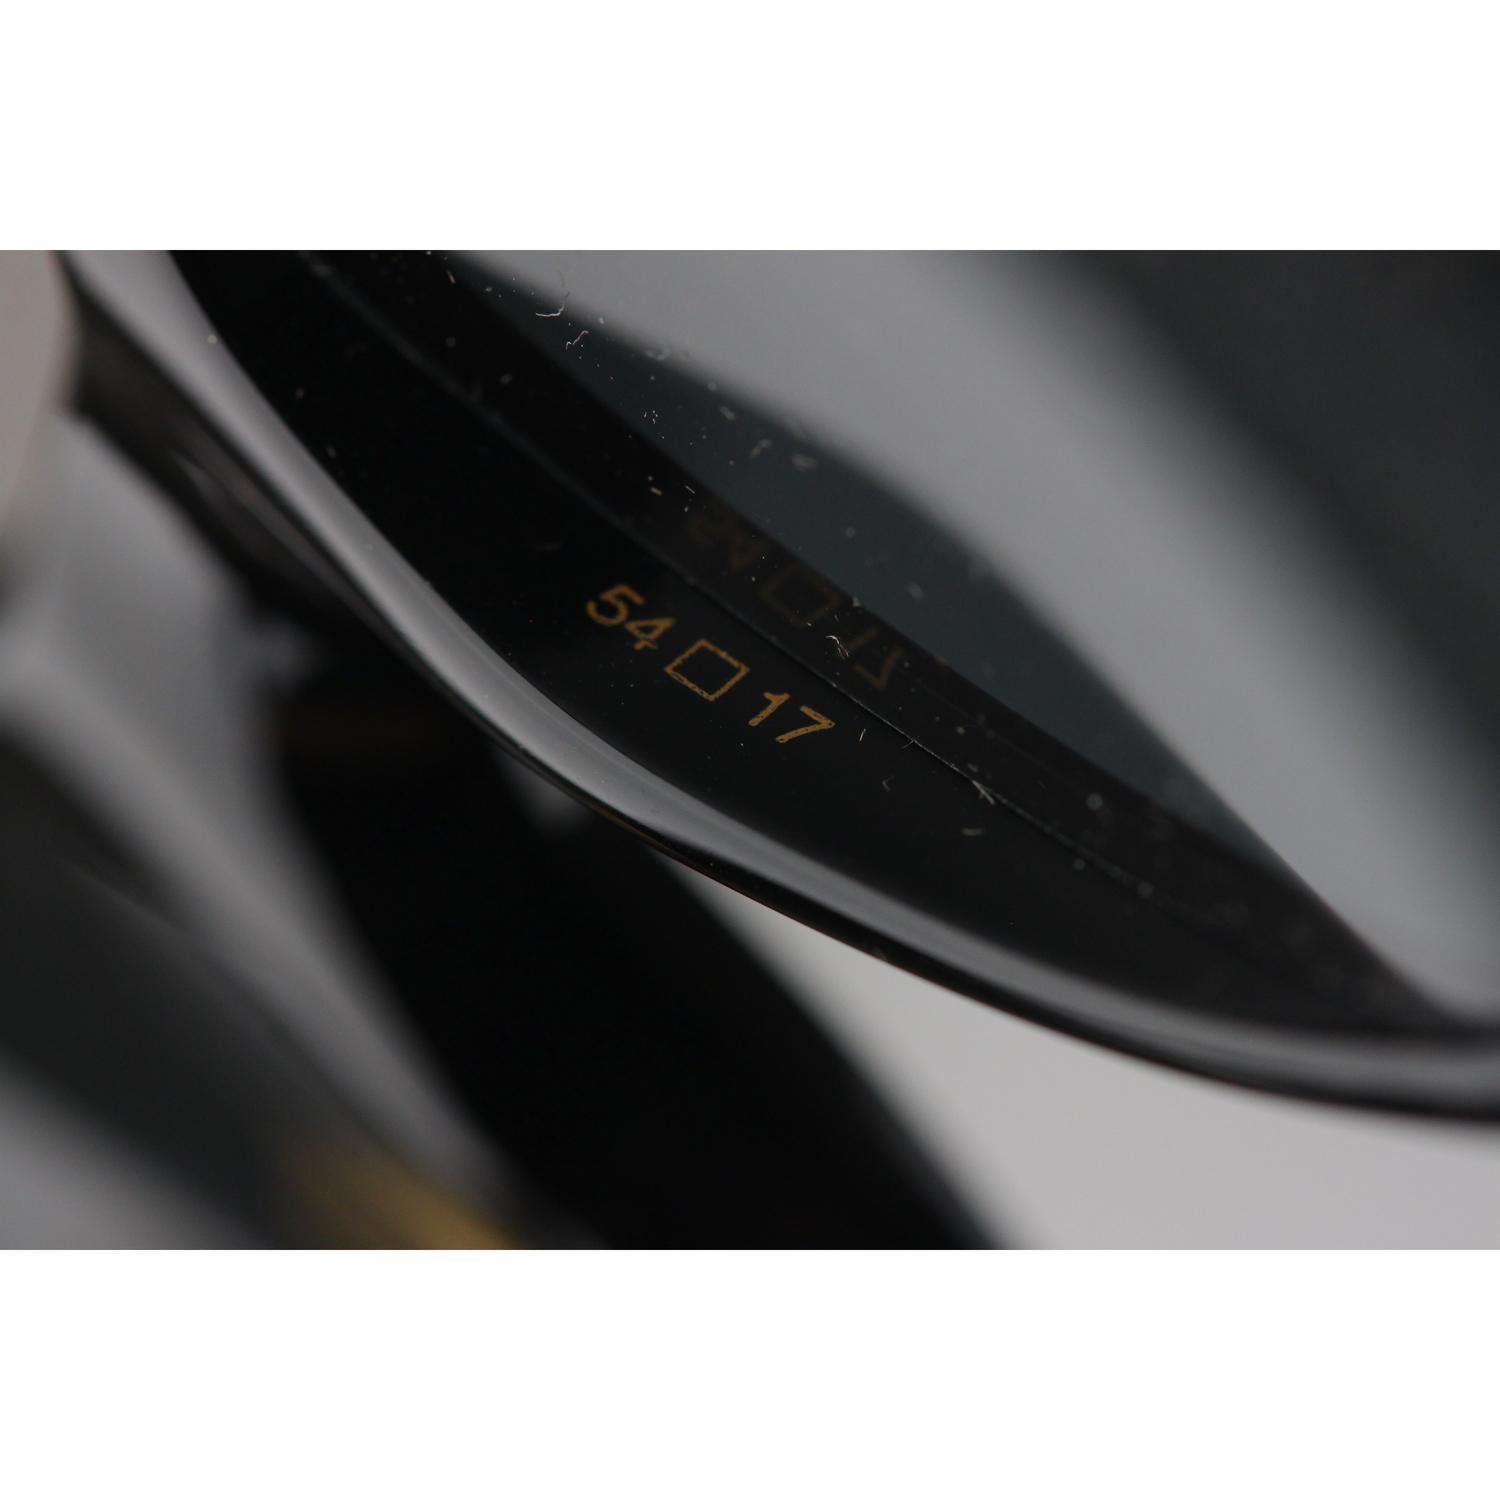 Cartier Paris Black Unisex Sunglasses Noir T8200184 New Old Stock 6